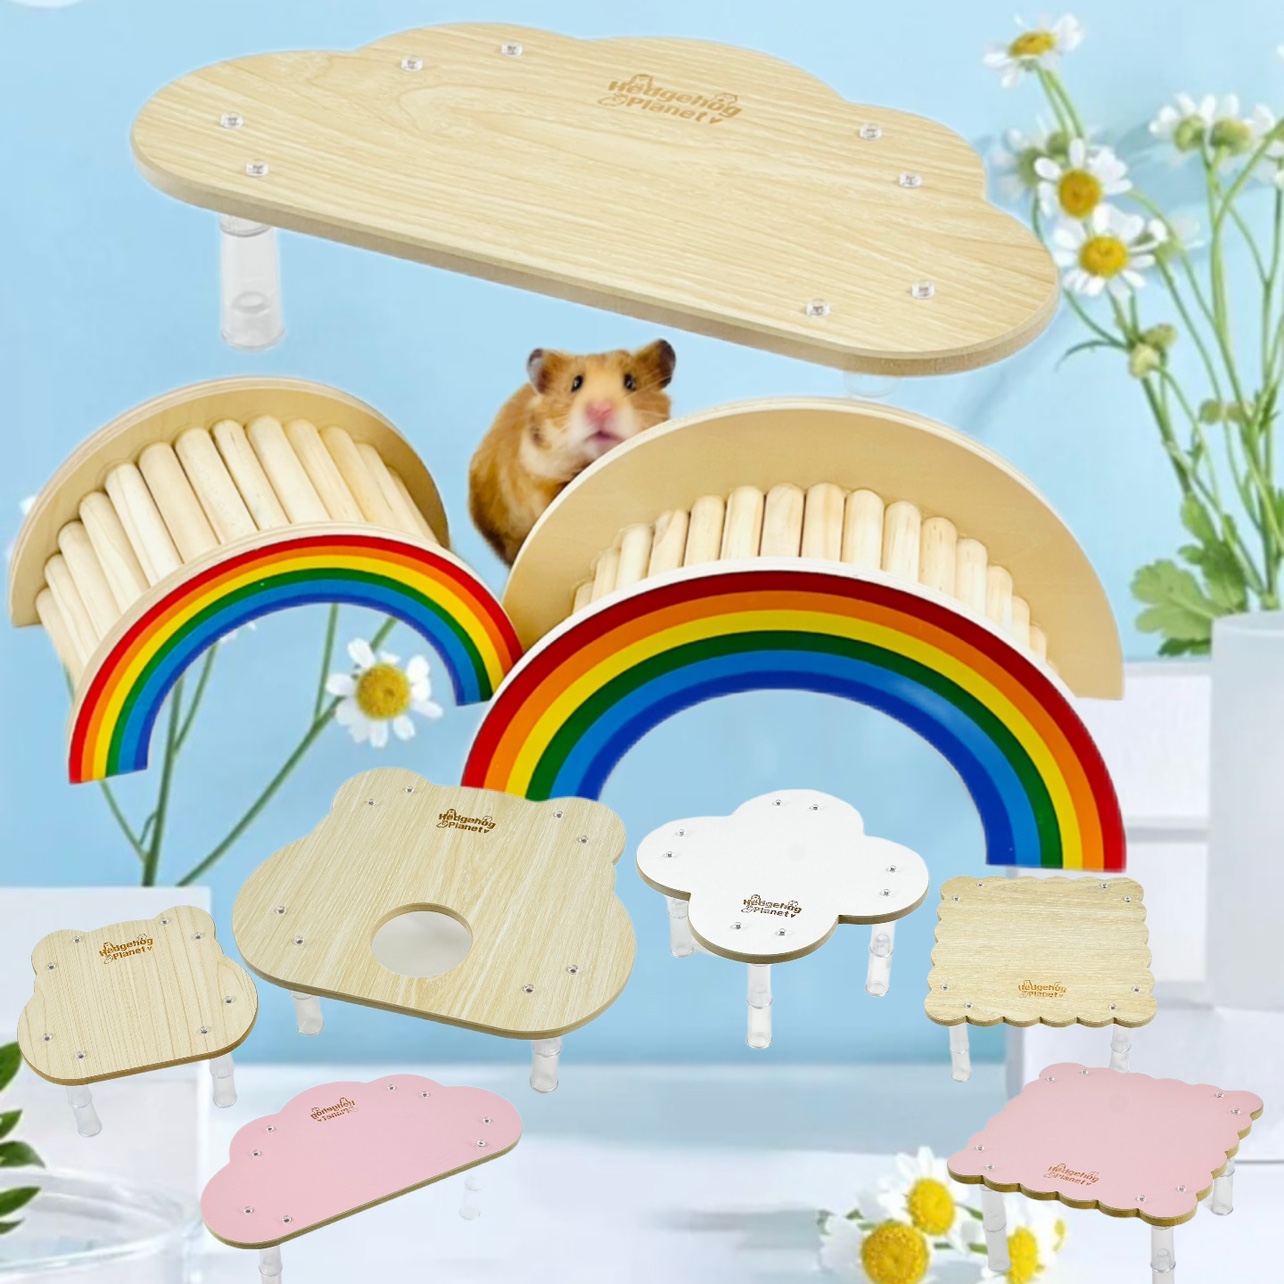 新款刺星球金絲熊倉鼠籠造景雲朵曲奇角落平台木閣樓玩具用品